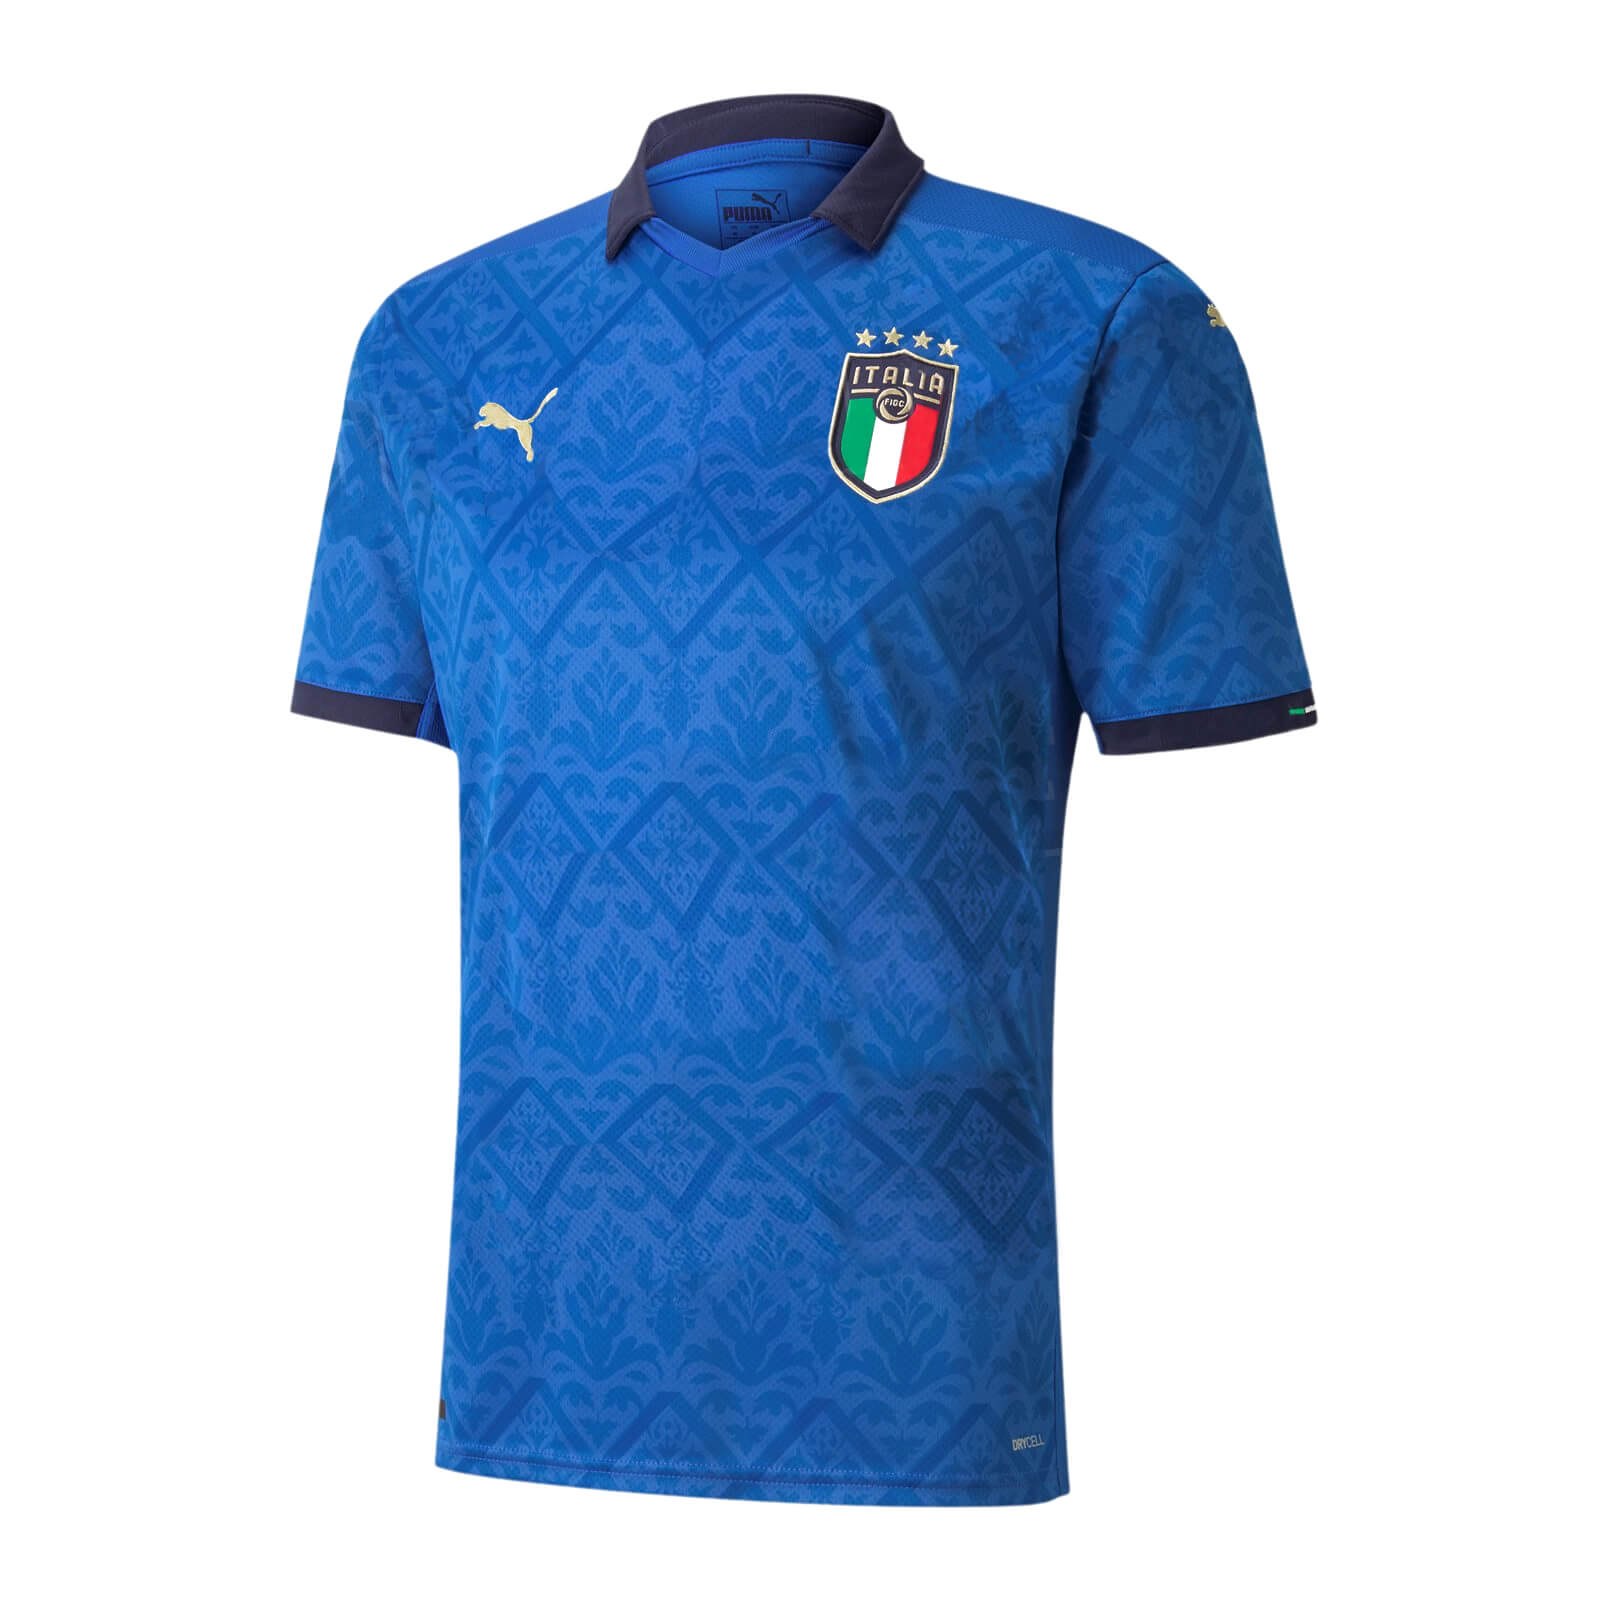 Cheap Italy Football Shirts Soccer Jerseys Soccerlord